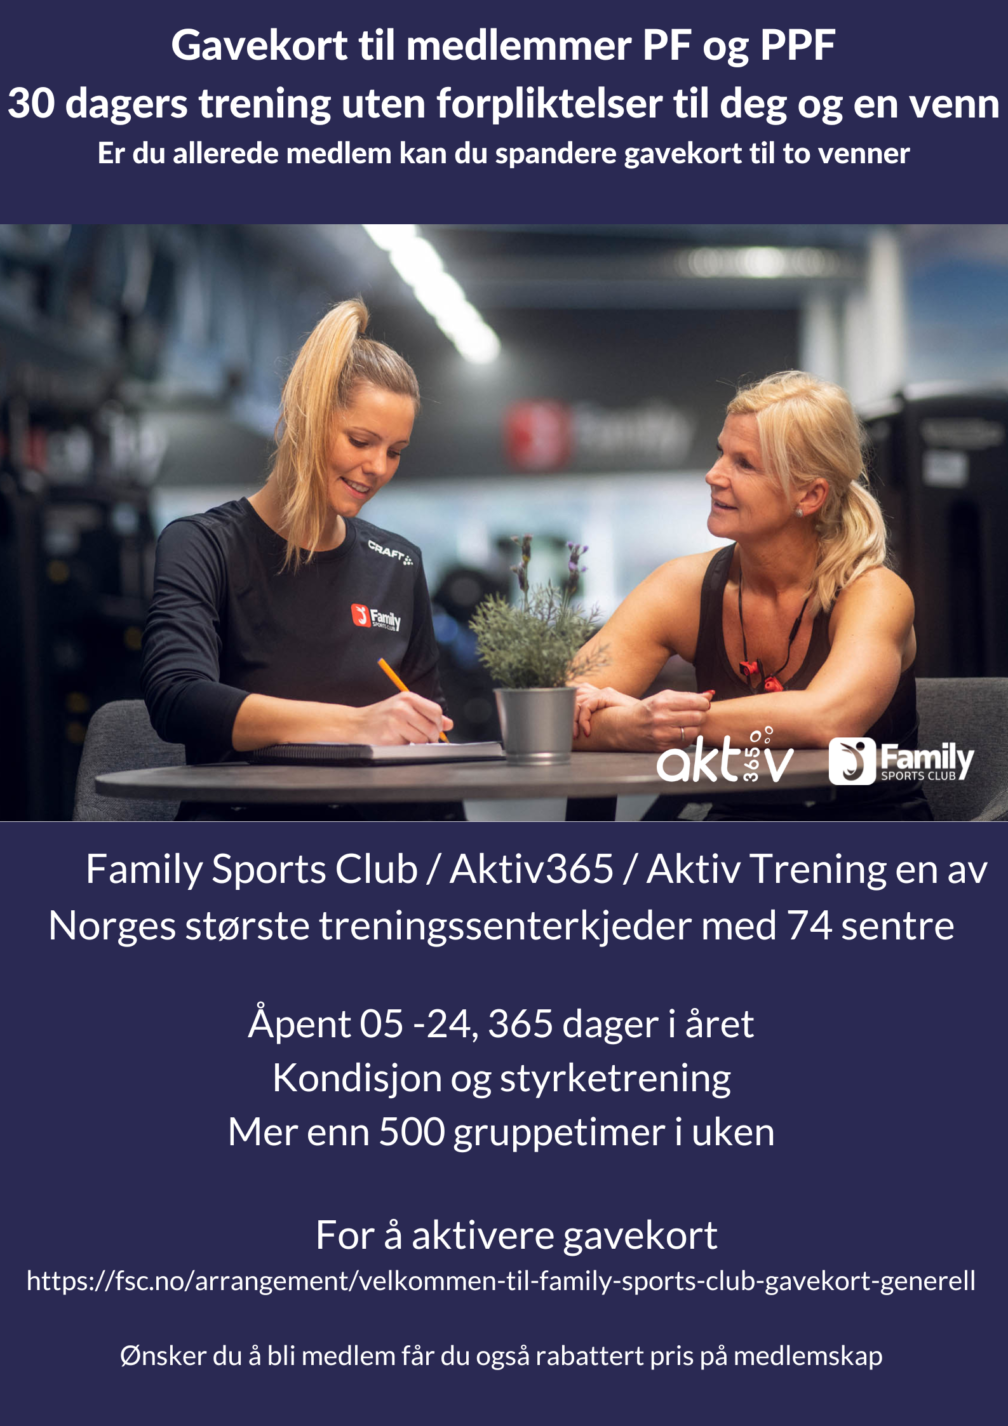 Family Sports Club Aktiv Trening Aktiv365 gavekort